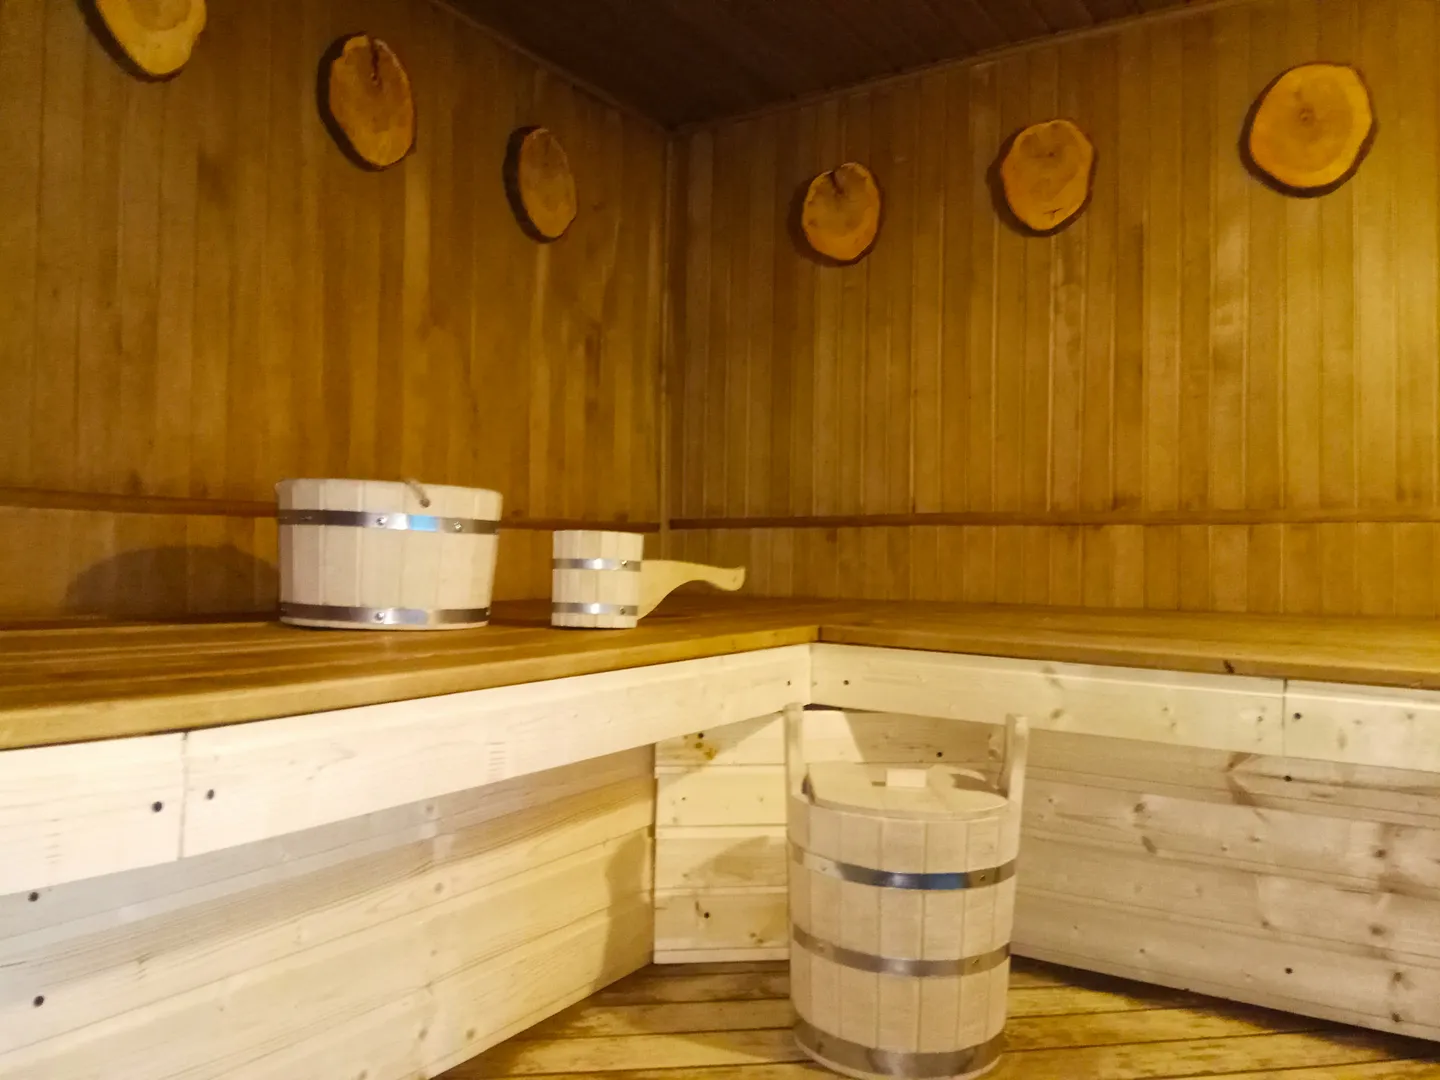 дрова для сауны 1000 рублей 15 кг, хватает на два часа или можно привезти с собой.